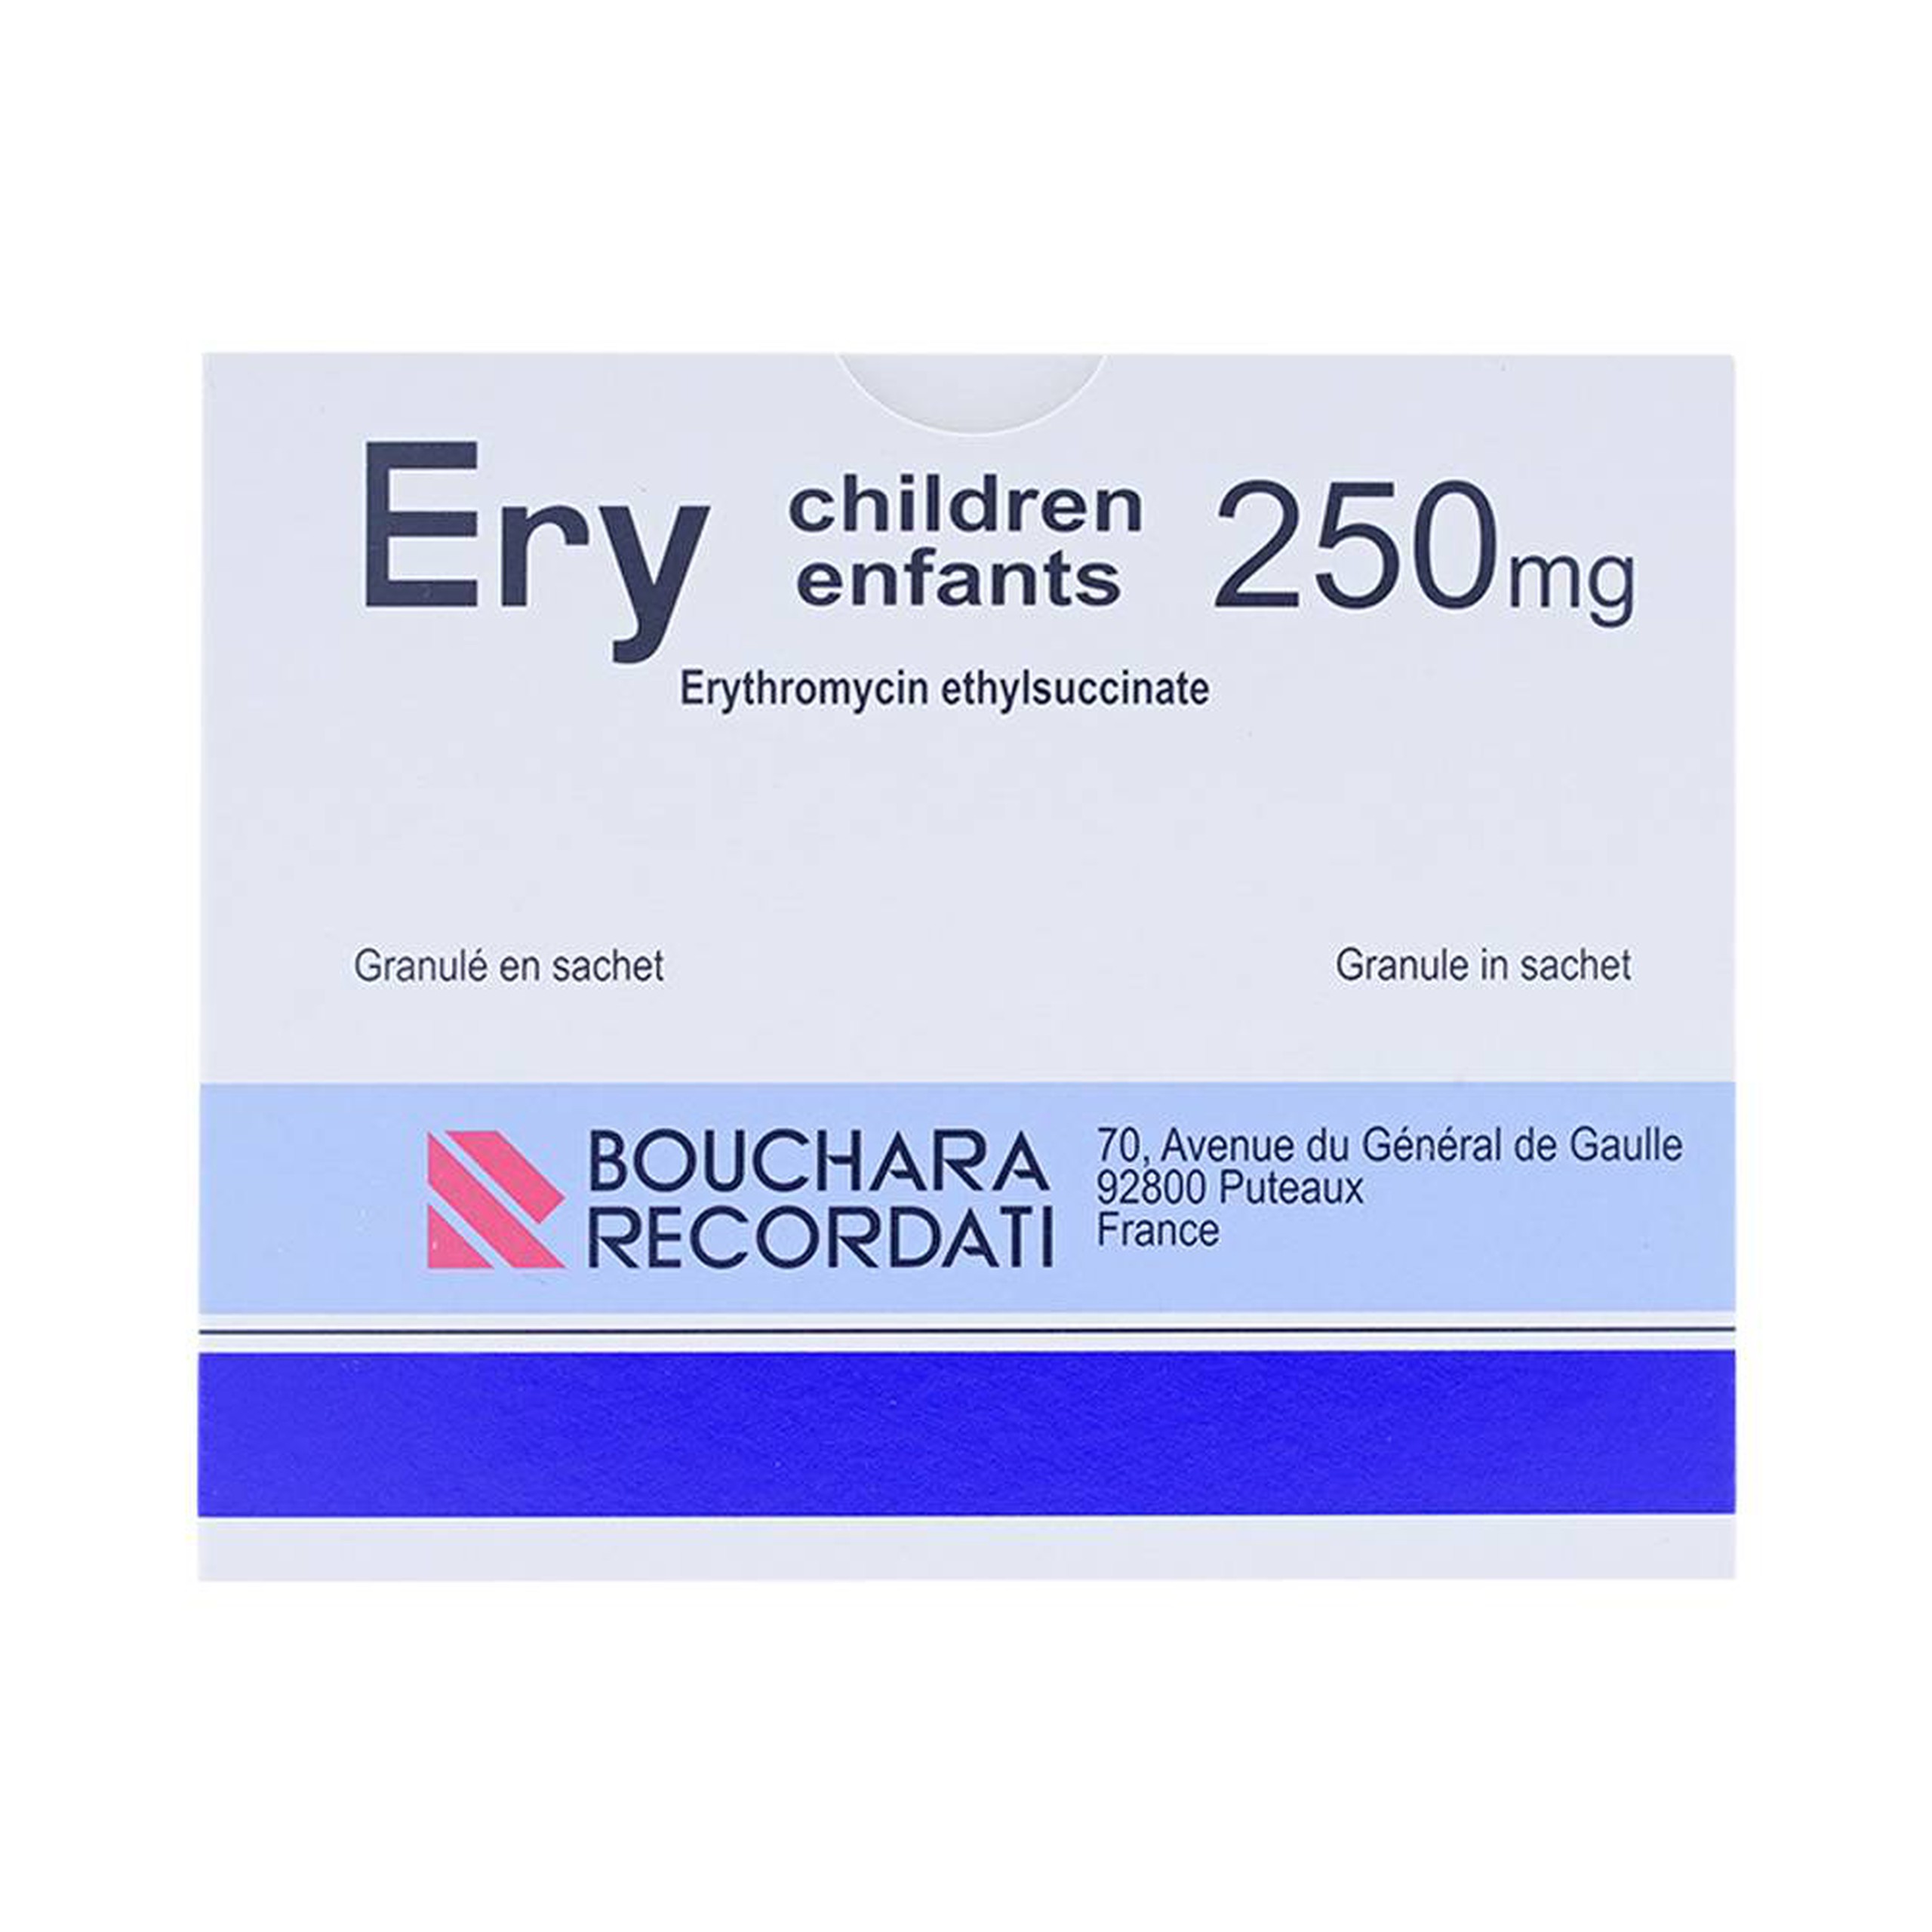 Cốm Ery Children Enfants 250mg Bouchara điều trị nhiễm khuẩn (24 gói)